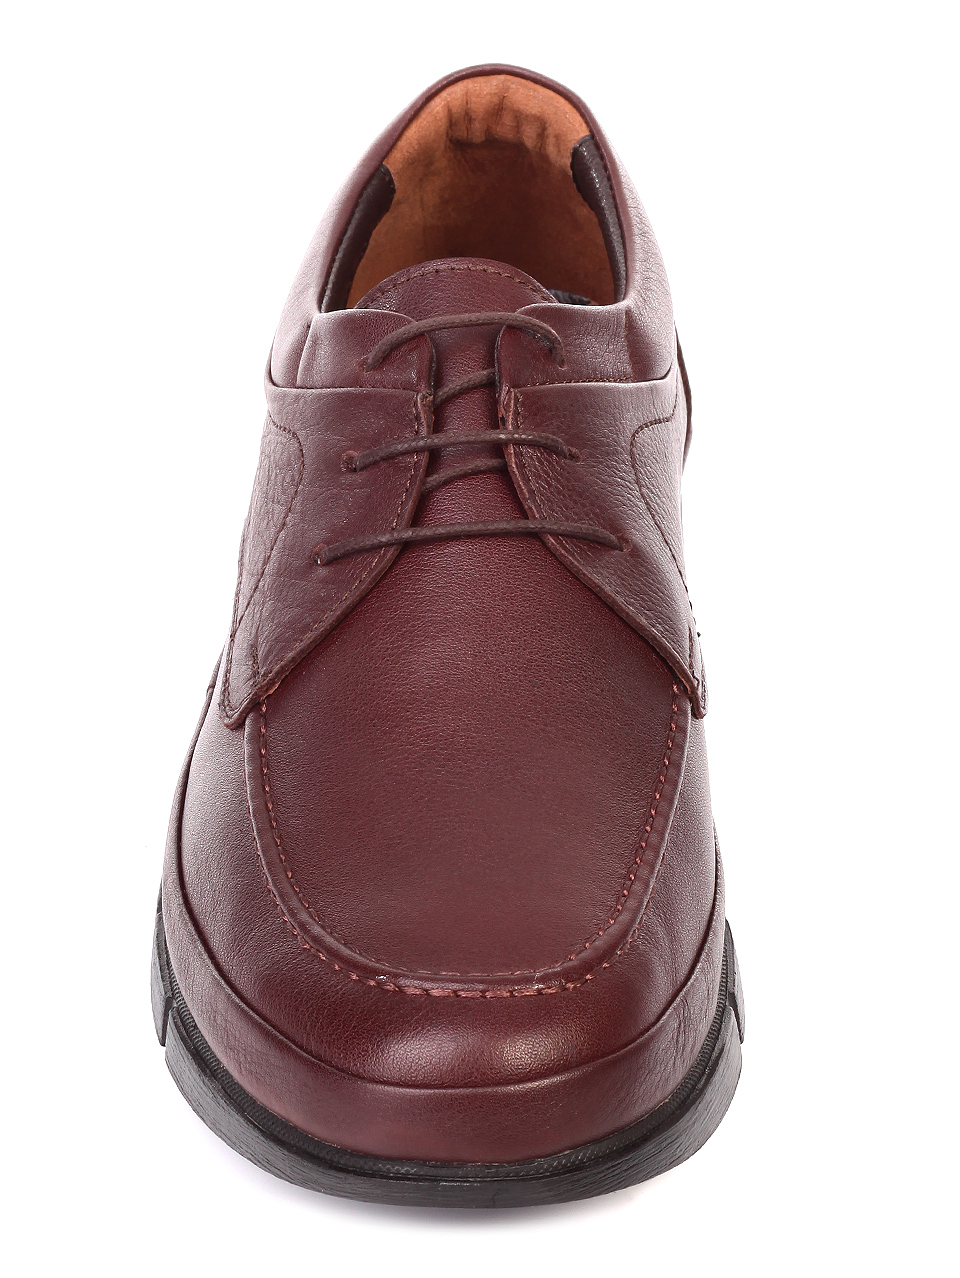 Ежедневни мъжки обувки от естествена кожа 7AT-19926 brown